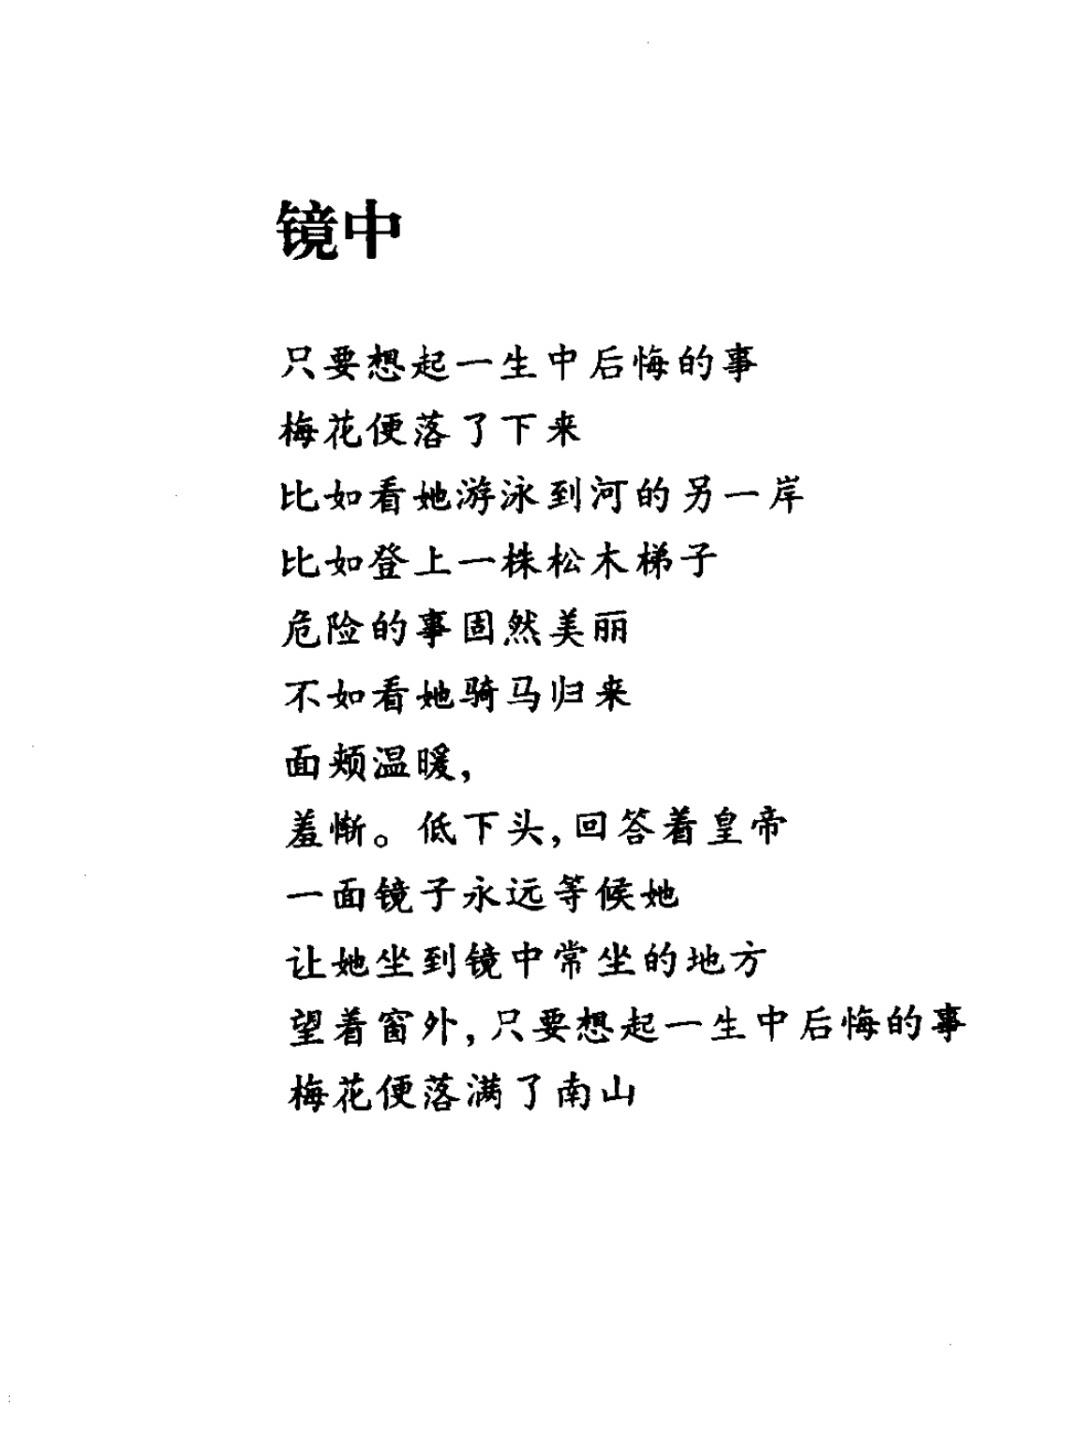 张枣的诗《镜中》手稿图片